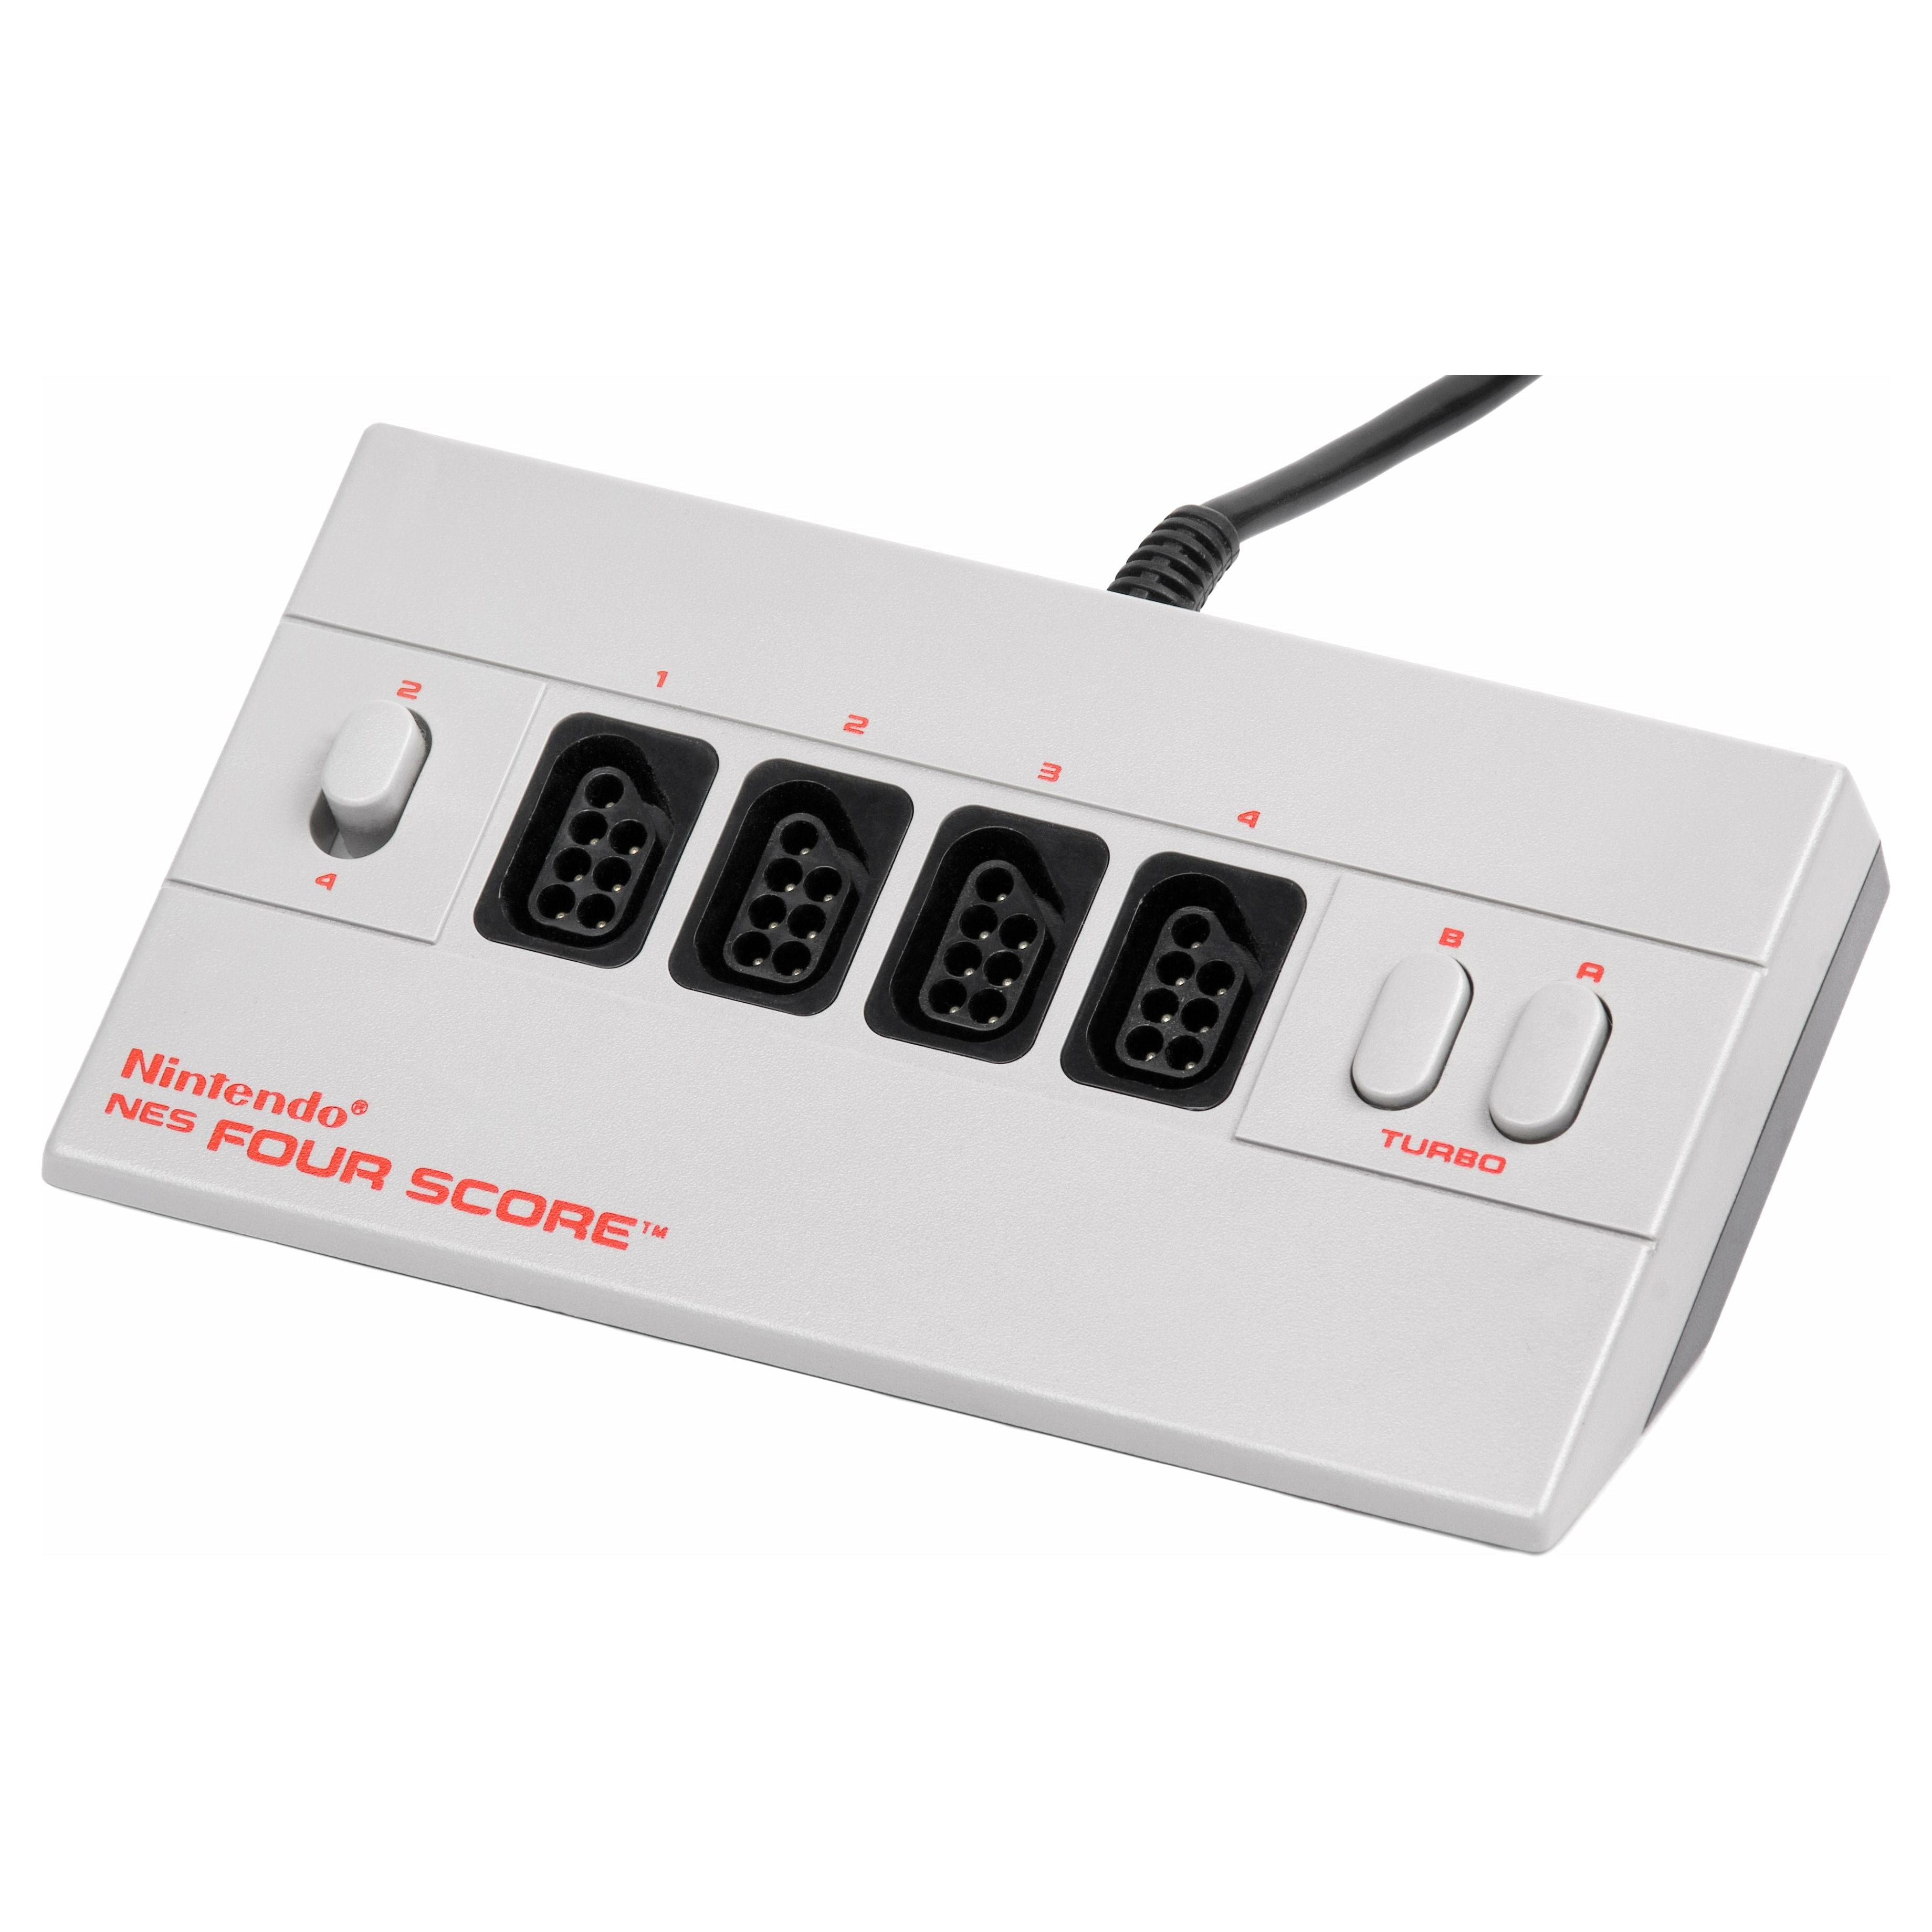 NES - Adaptateur pour 4 joueurs Four Score NES.